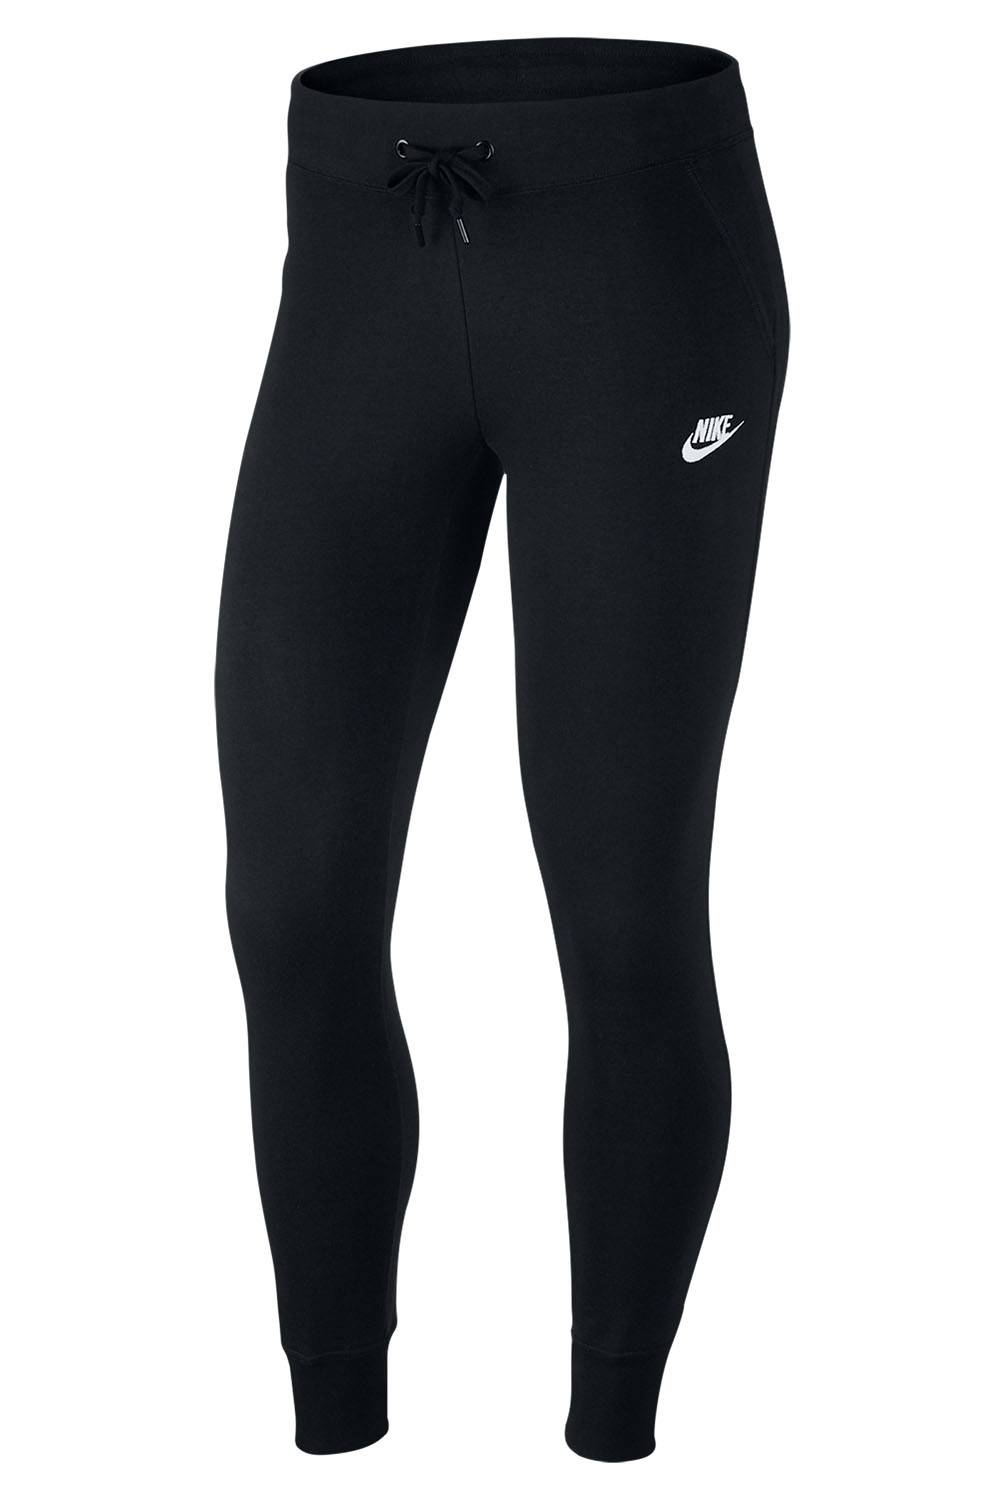 Nike - Pantalón Mujer